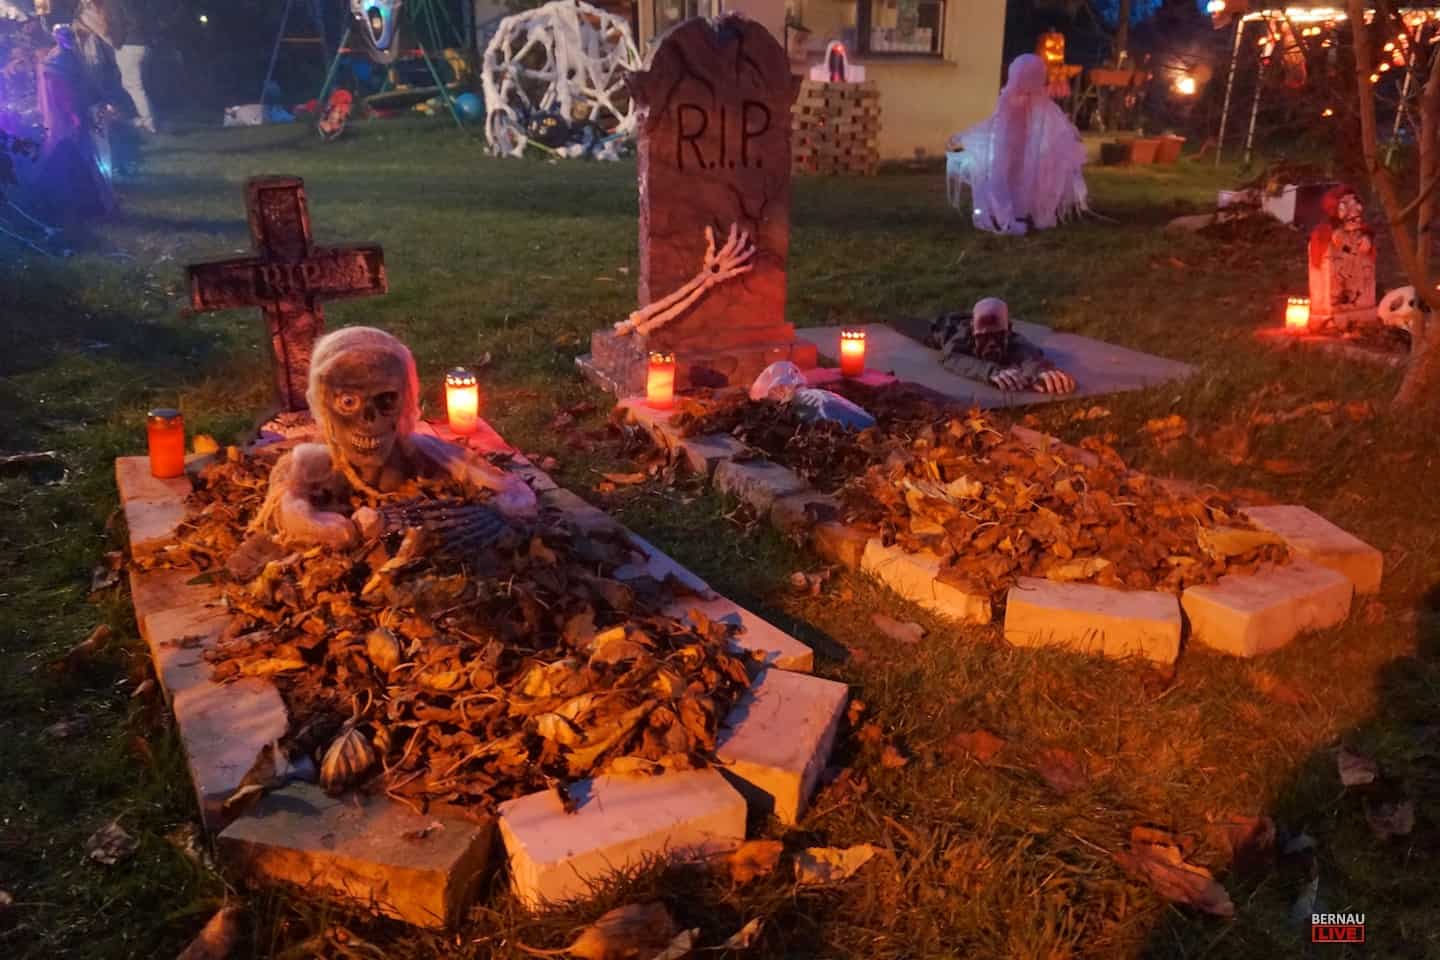 Halloween: Geister, Partys und geschmückte Häuser in Bernau